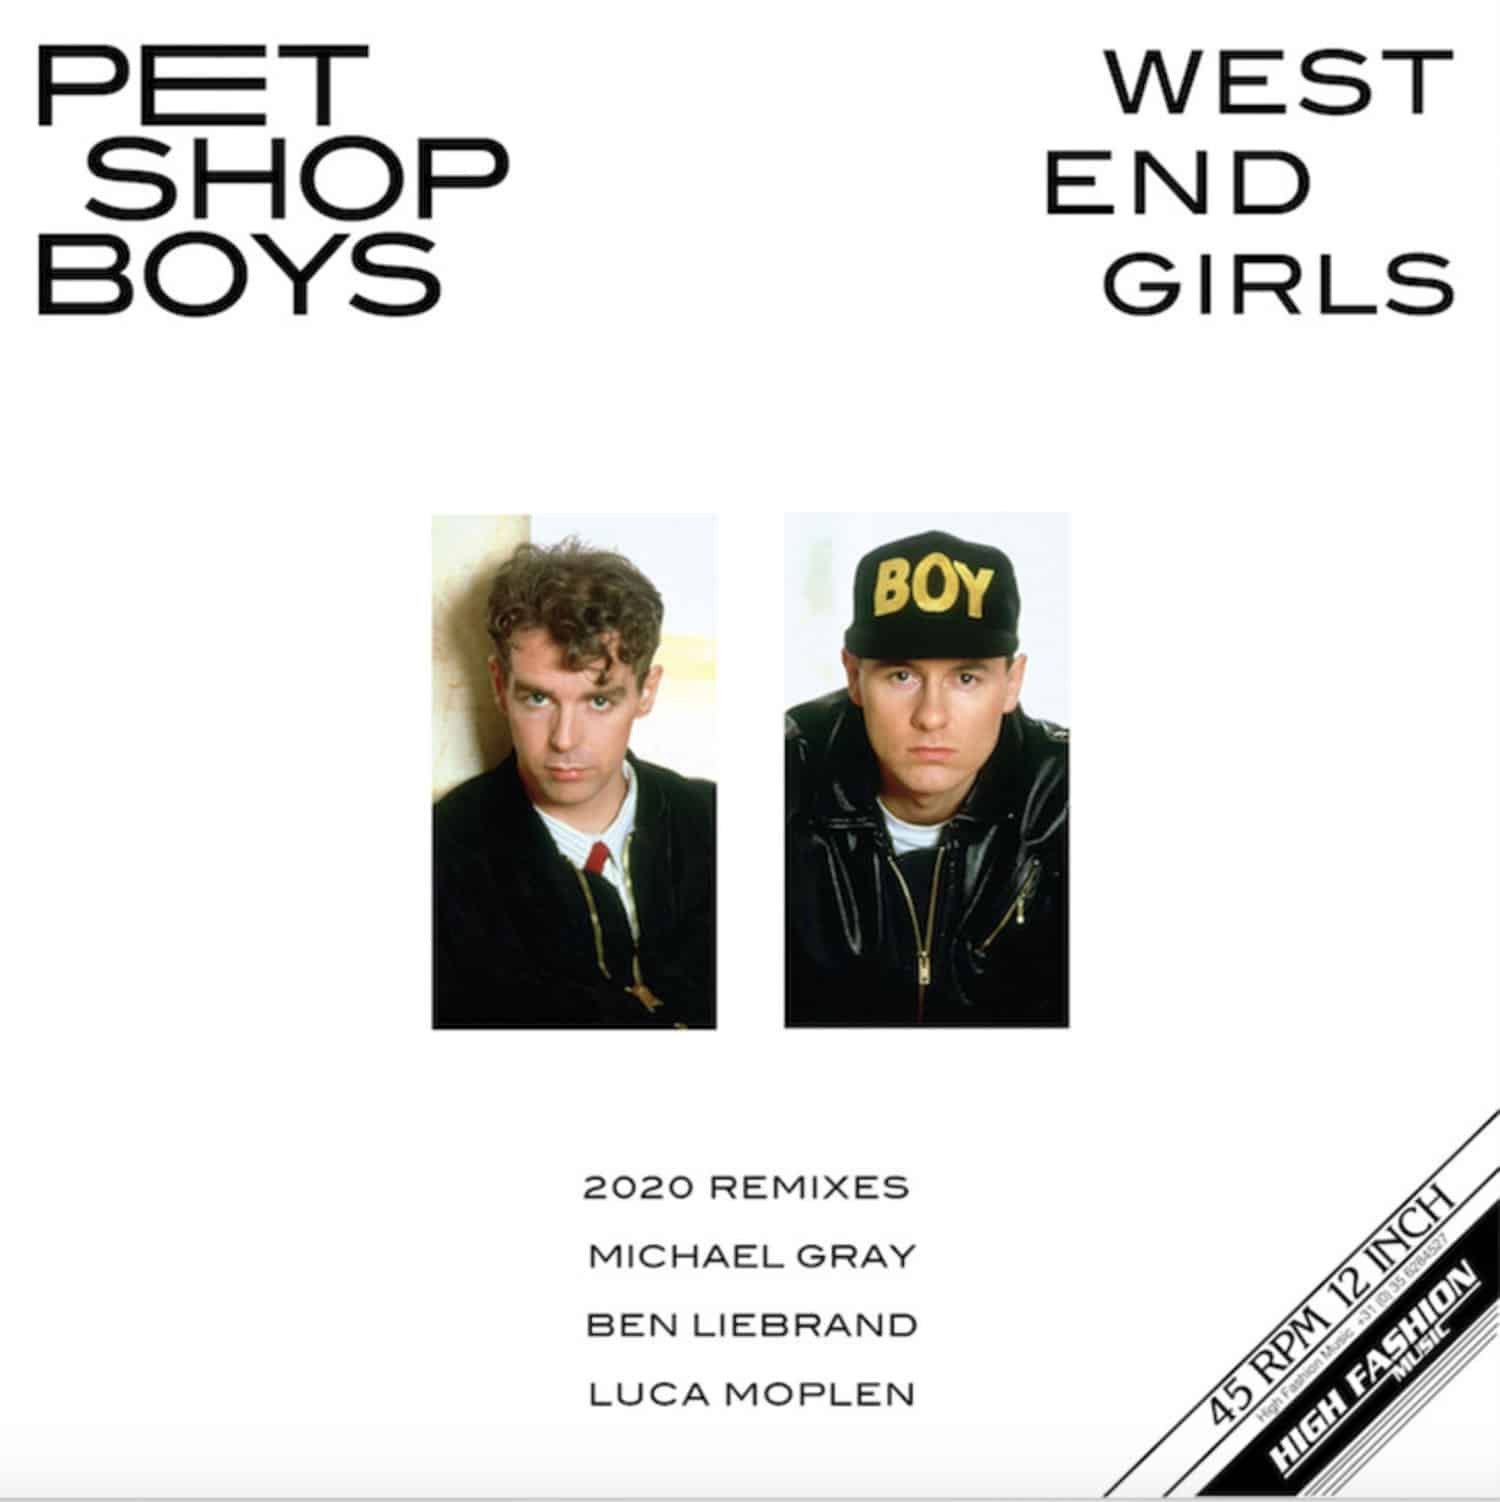 Pet Shop Boys - WEST END GIRLS 